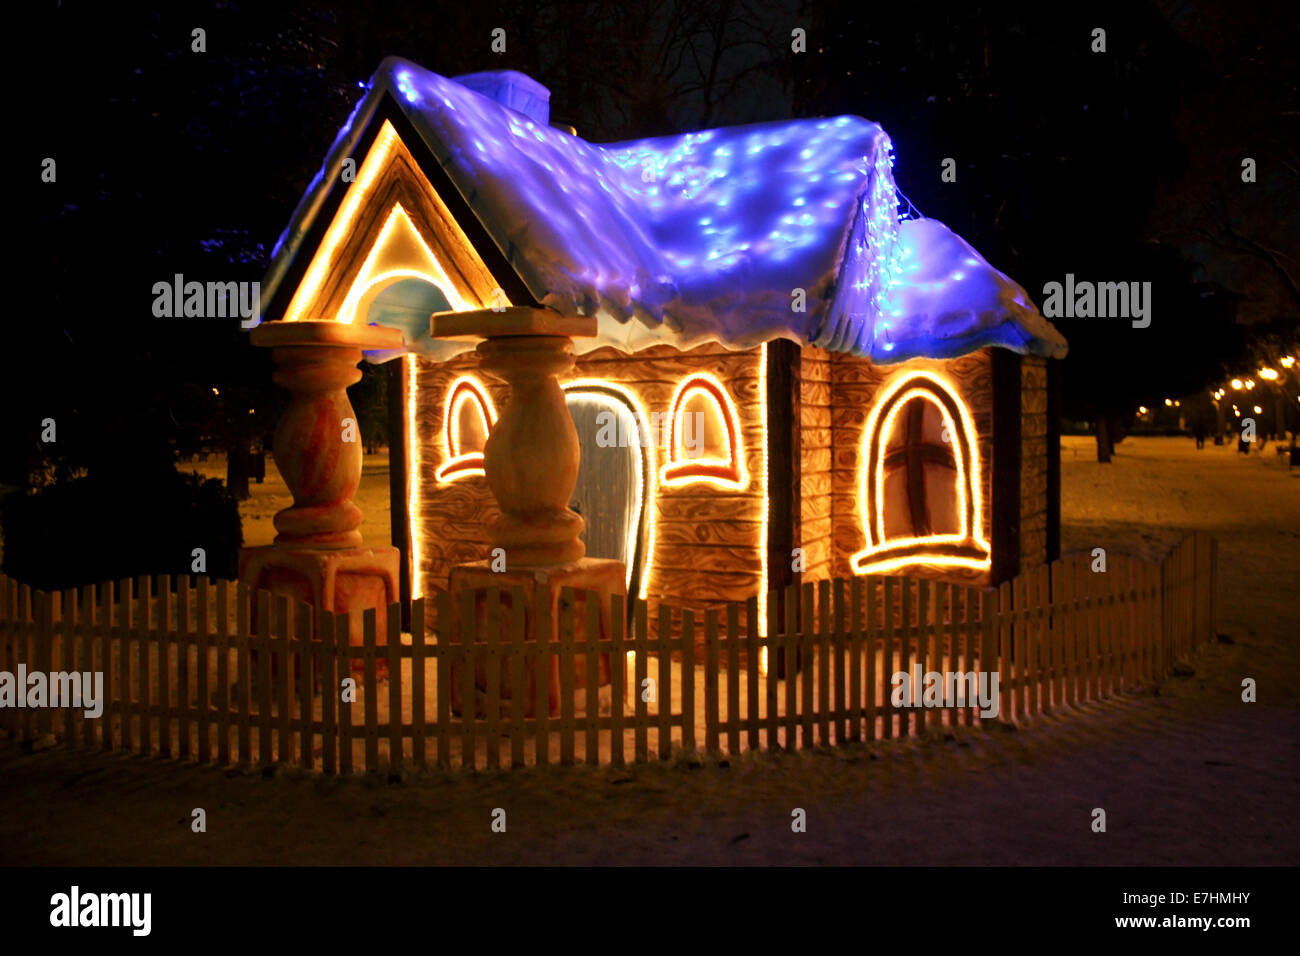 Une petite maison éclairée la nuit en hiver Banque D'Images